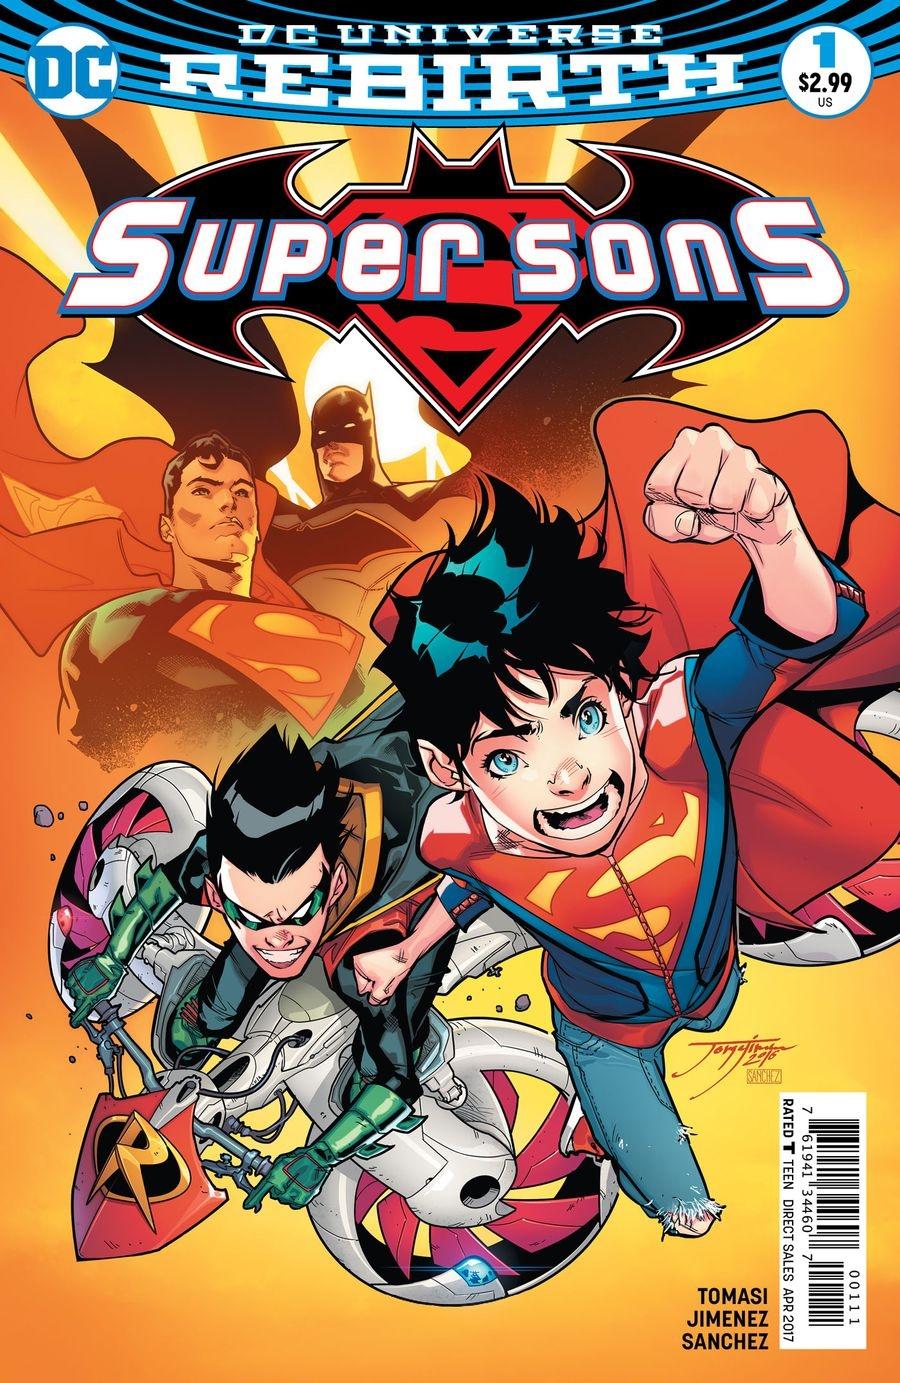 Super Sons Vol. 1 #1